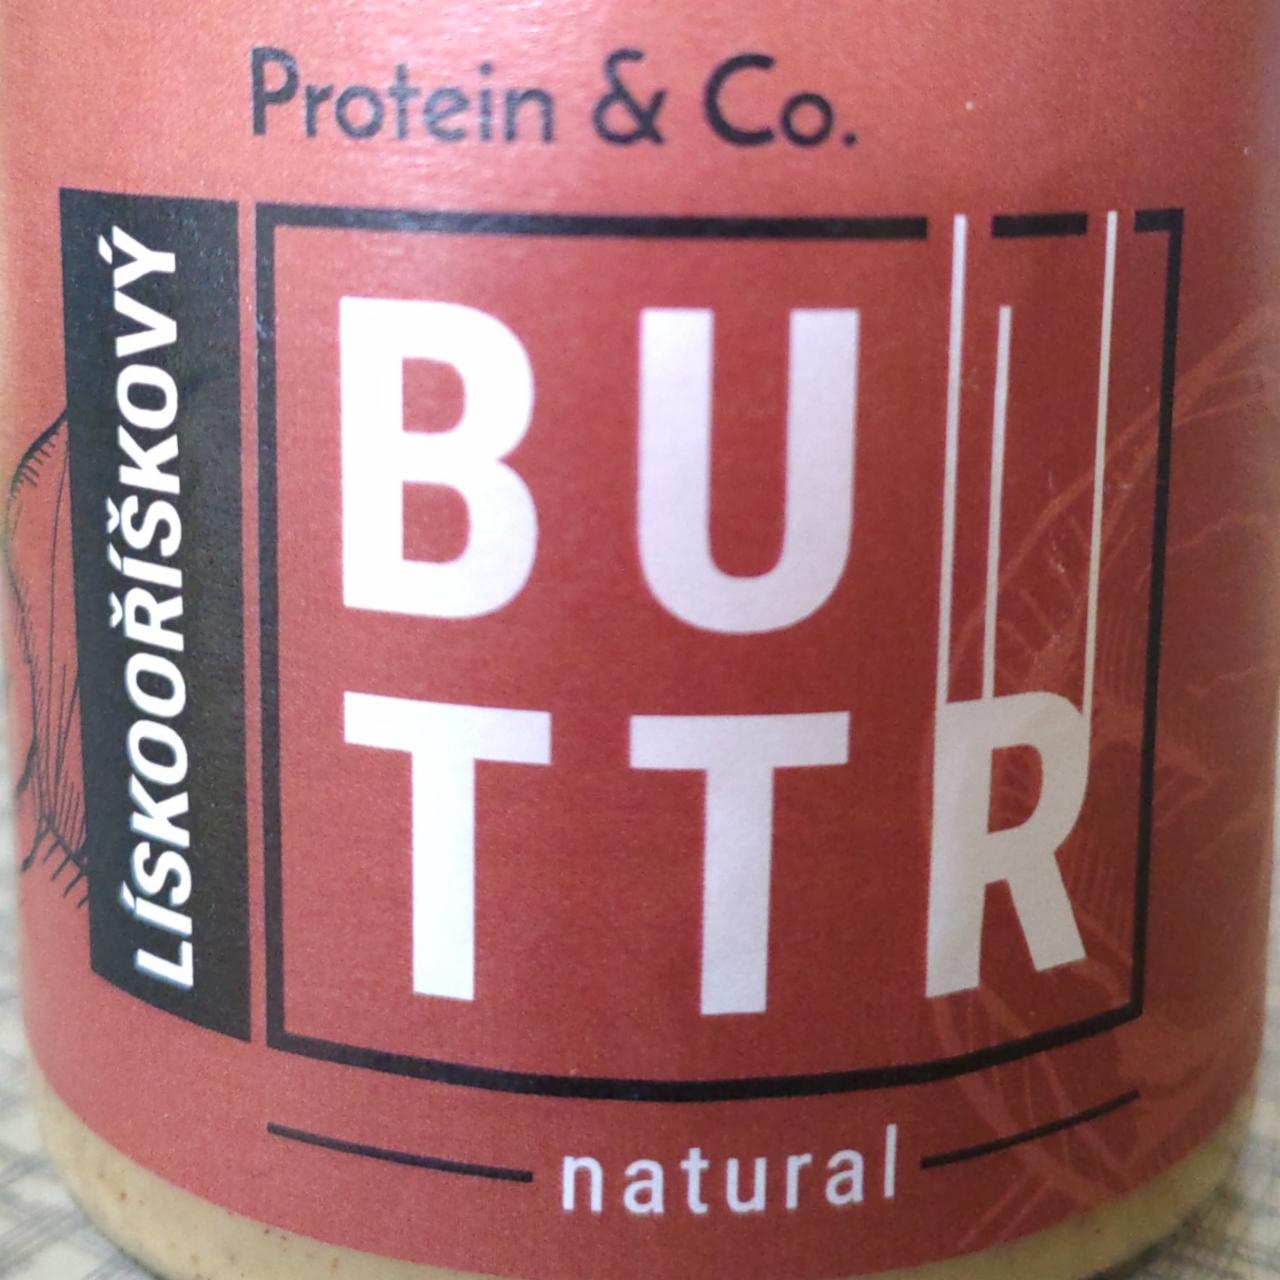 Fotografie - Lískooříškový Buttr Natural Protein & Co.